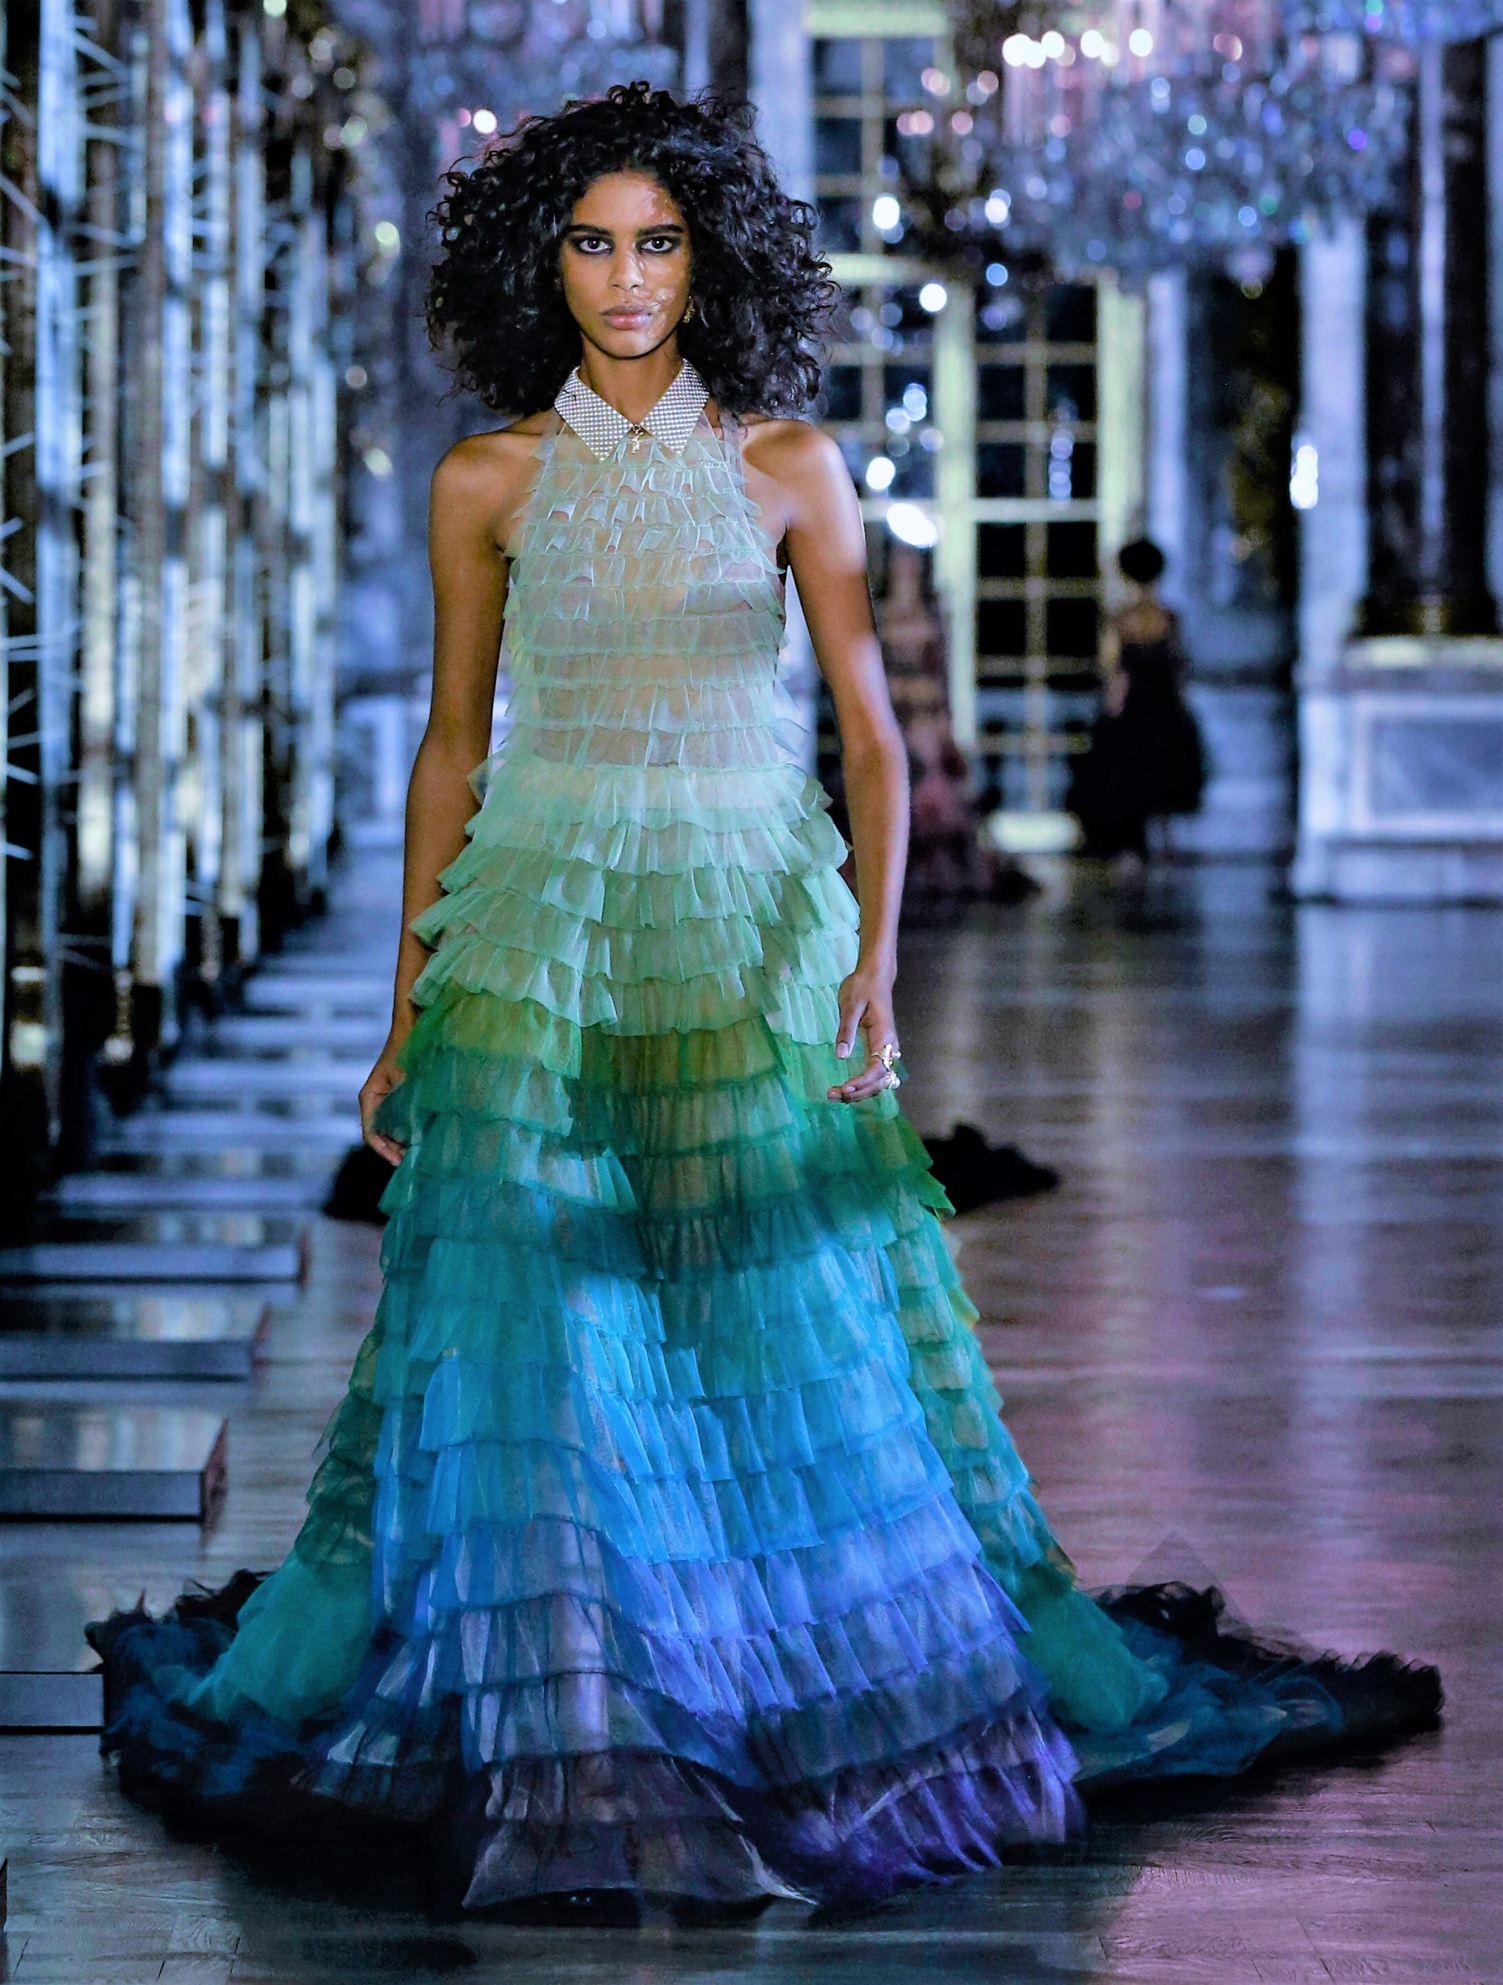 Christian Dior ruffle gown vogue paris 2 cropped.jpg